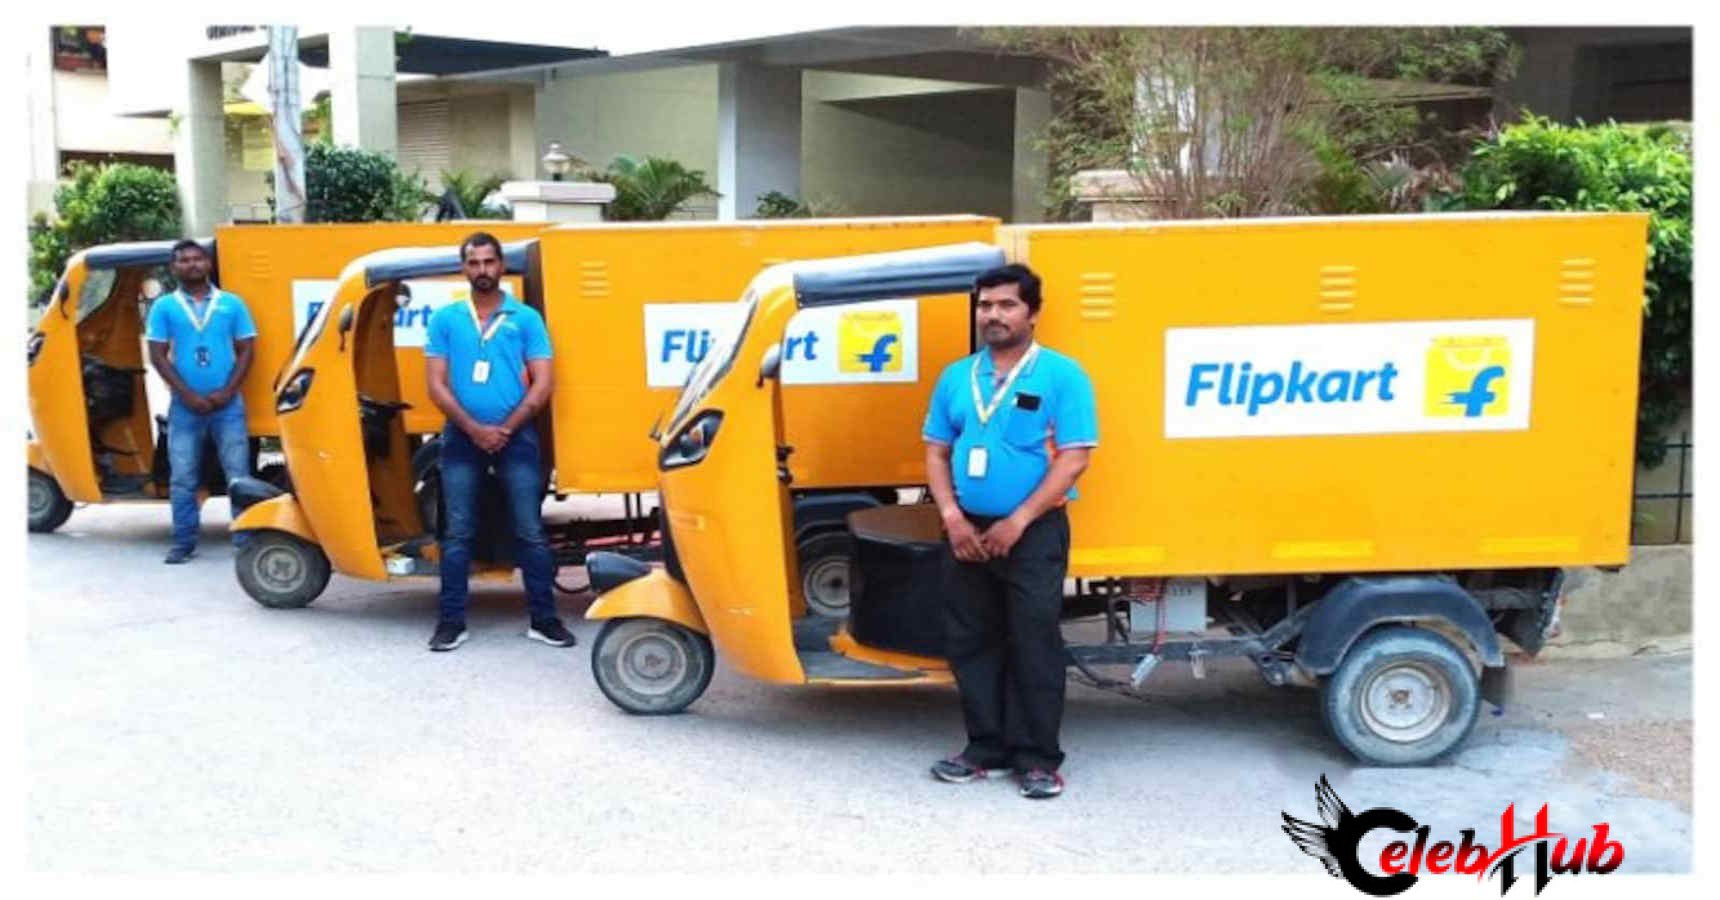 Flipkart delivered 